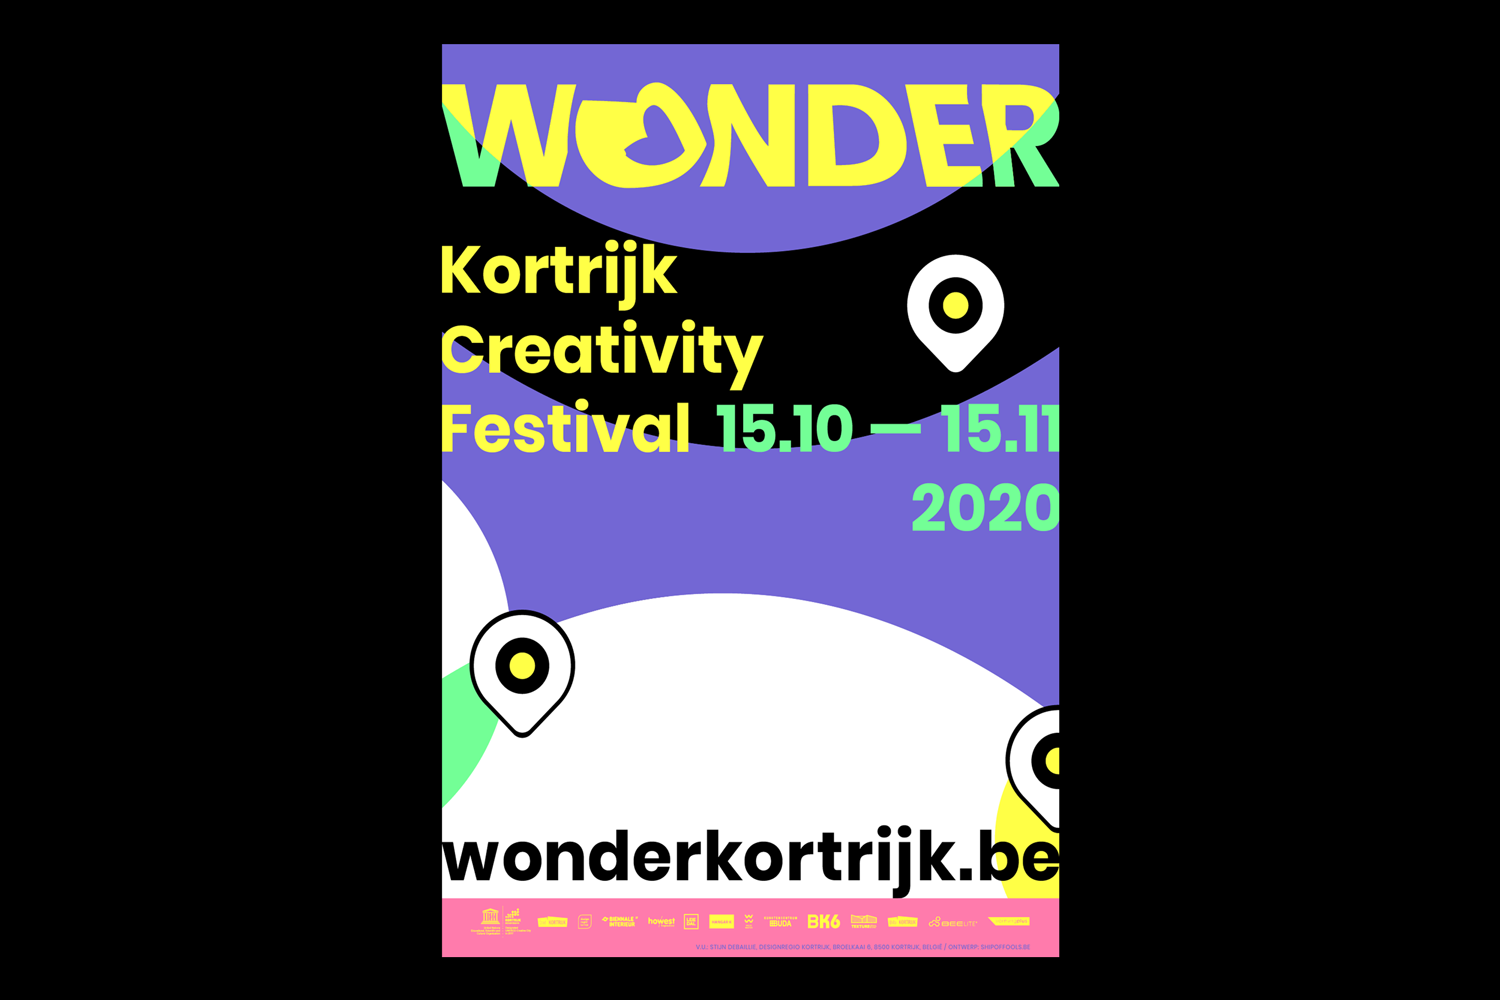 Wonder-Kortrijk-Creativity-Festival-identity-branding-Designregio-Kortrijk-Artist-Proof-Studio-Thomas-De-Ben-7.png